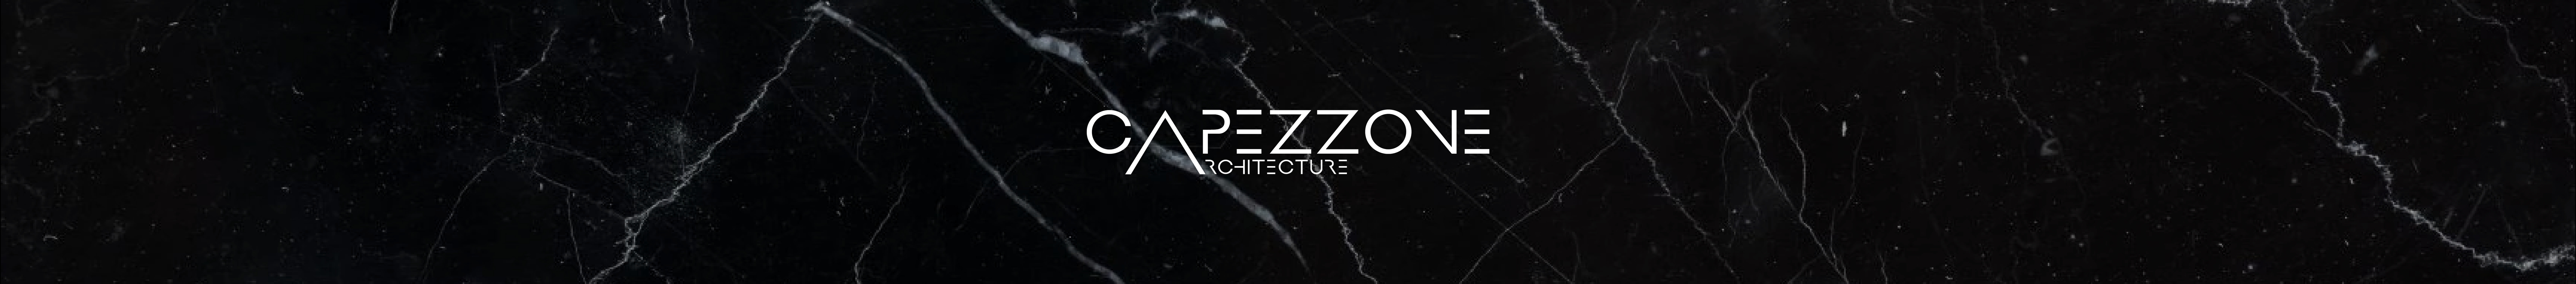 Capezzone Architecture's profile banner